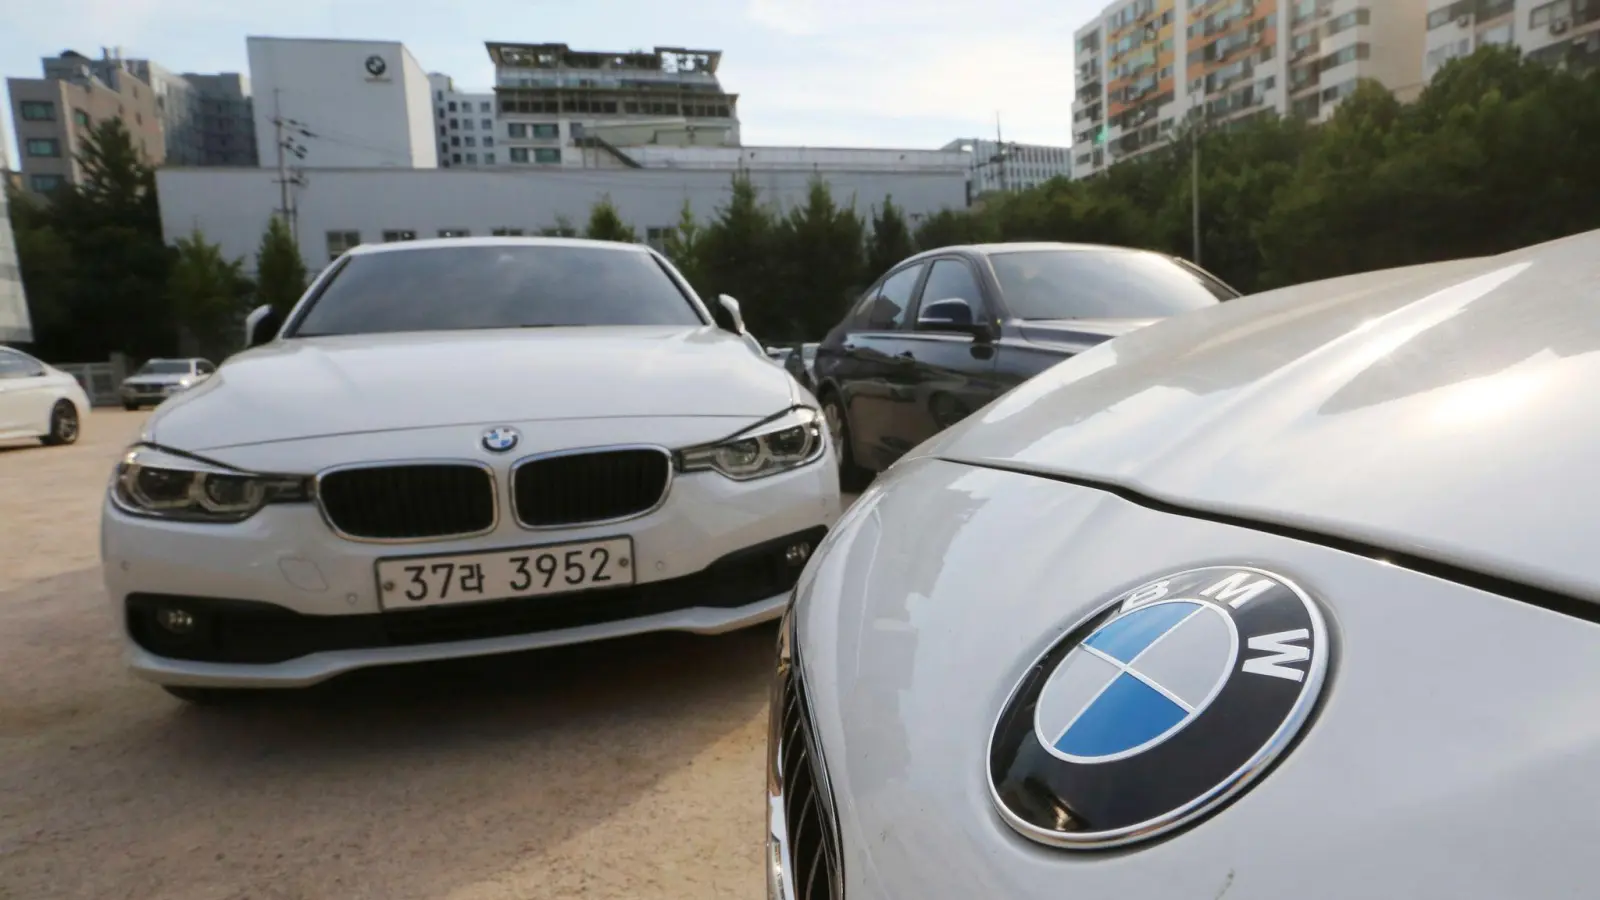 Die EU-Kommission hatte 2021 gegen BMW und Volkswagen wegen unerlaubter Absprachen zu sogenannten Adblue-Tanks hohe Strafen verhängt. Bei der Untersuchung in Südkorea ging es den Angaben der Autohersteller zufolge um die gleichen Sachverhalte. (Foto: Ahn Young-Joon/AP/dpa)